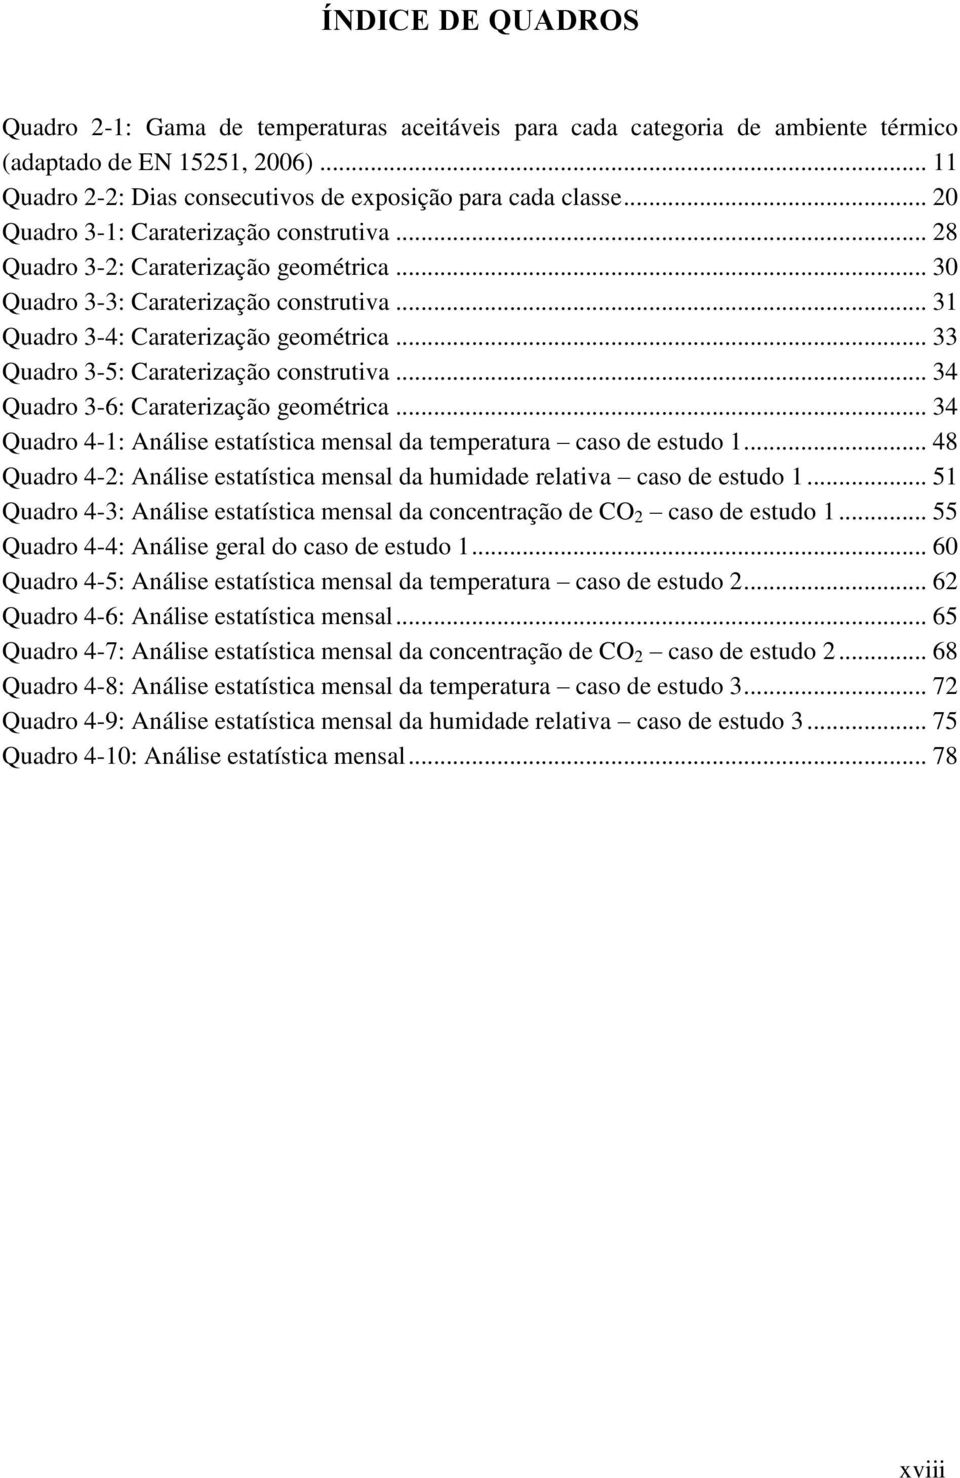 .. 33 Quadro 3-5: Caraterização construtiva... 34 Quadro 3-6: Caraterização geométrica... 34 Quadro 4-1: Análise estatística mensal da temperatura caso de estudo 1.